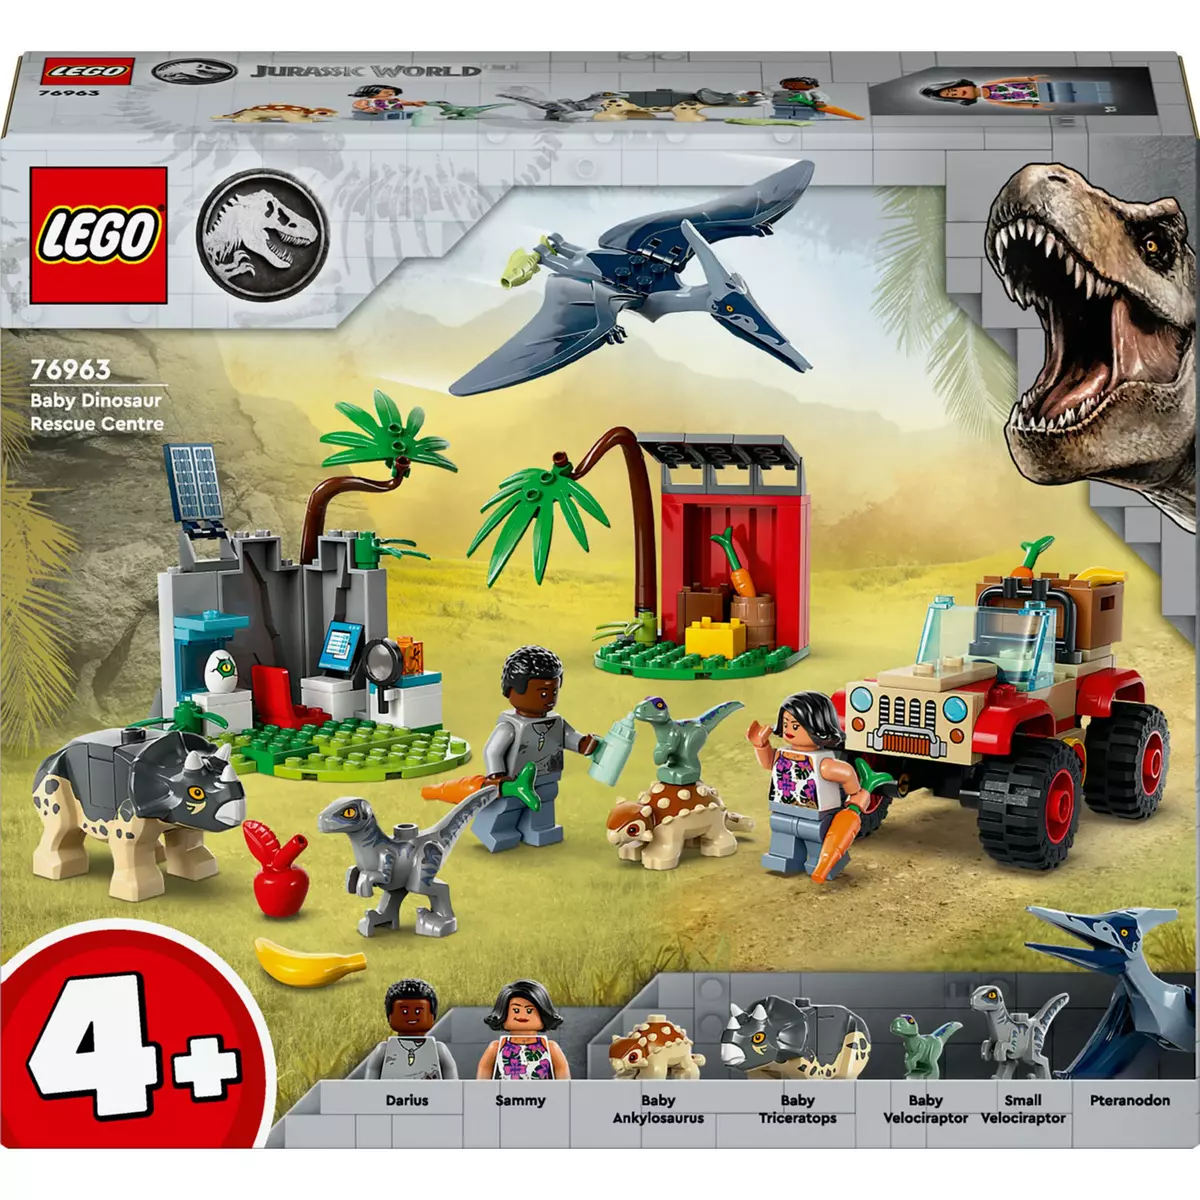 LEGO Jurassic Park 76959 La Recherche du Tricératops, Jouet de